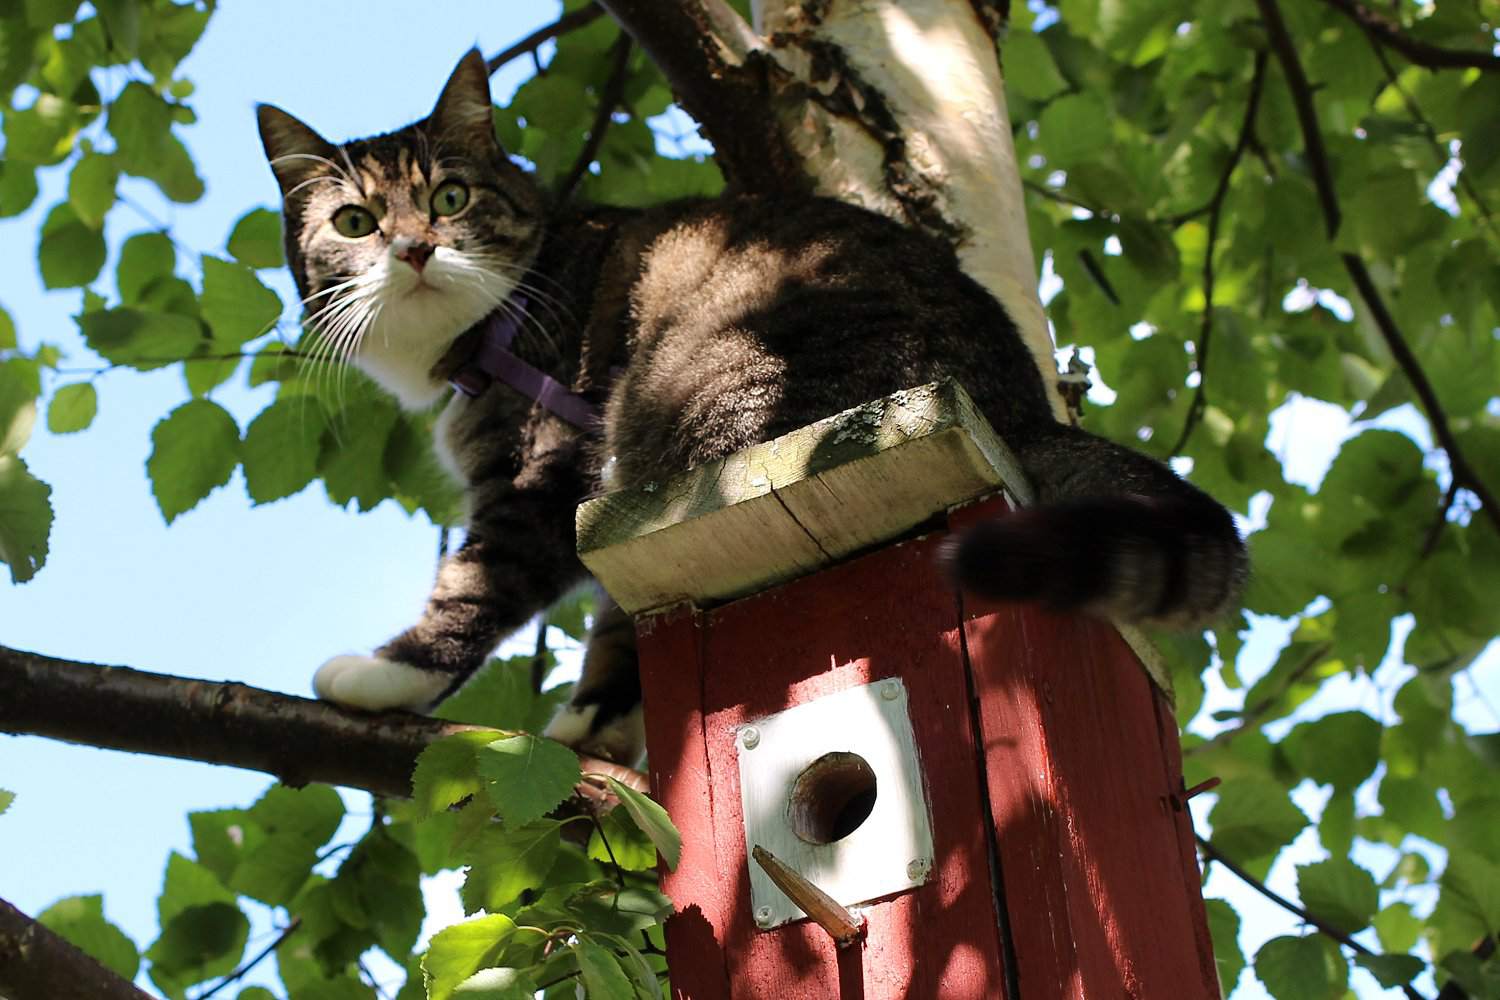 Cat on a birdhouse